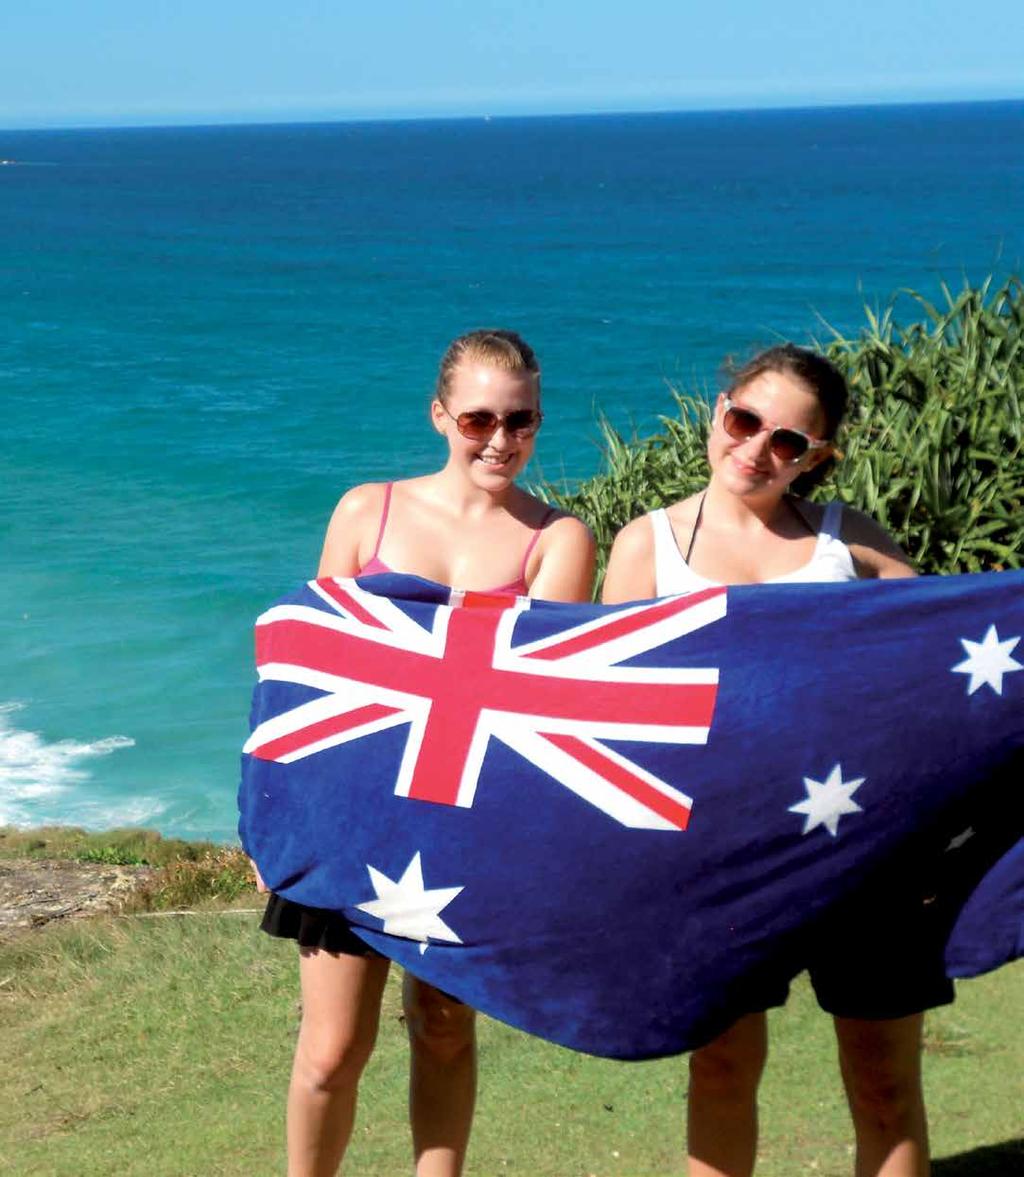 AUSTRALIEN Welcome to Paradise! heißt es auf einem Schild in der Empfangs halle des inter nationalen Flug hafens von Brisbane und es stimmt: Australien ist ein knallbuntes Paradies!